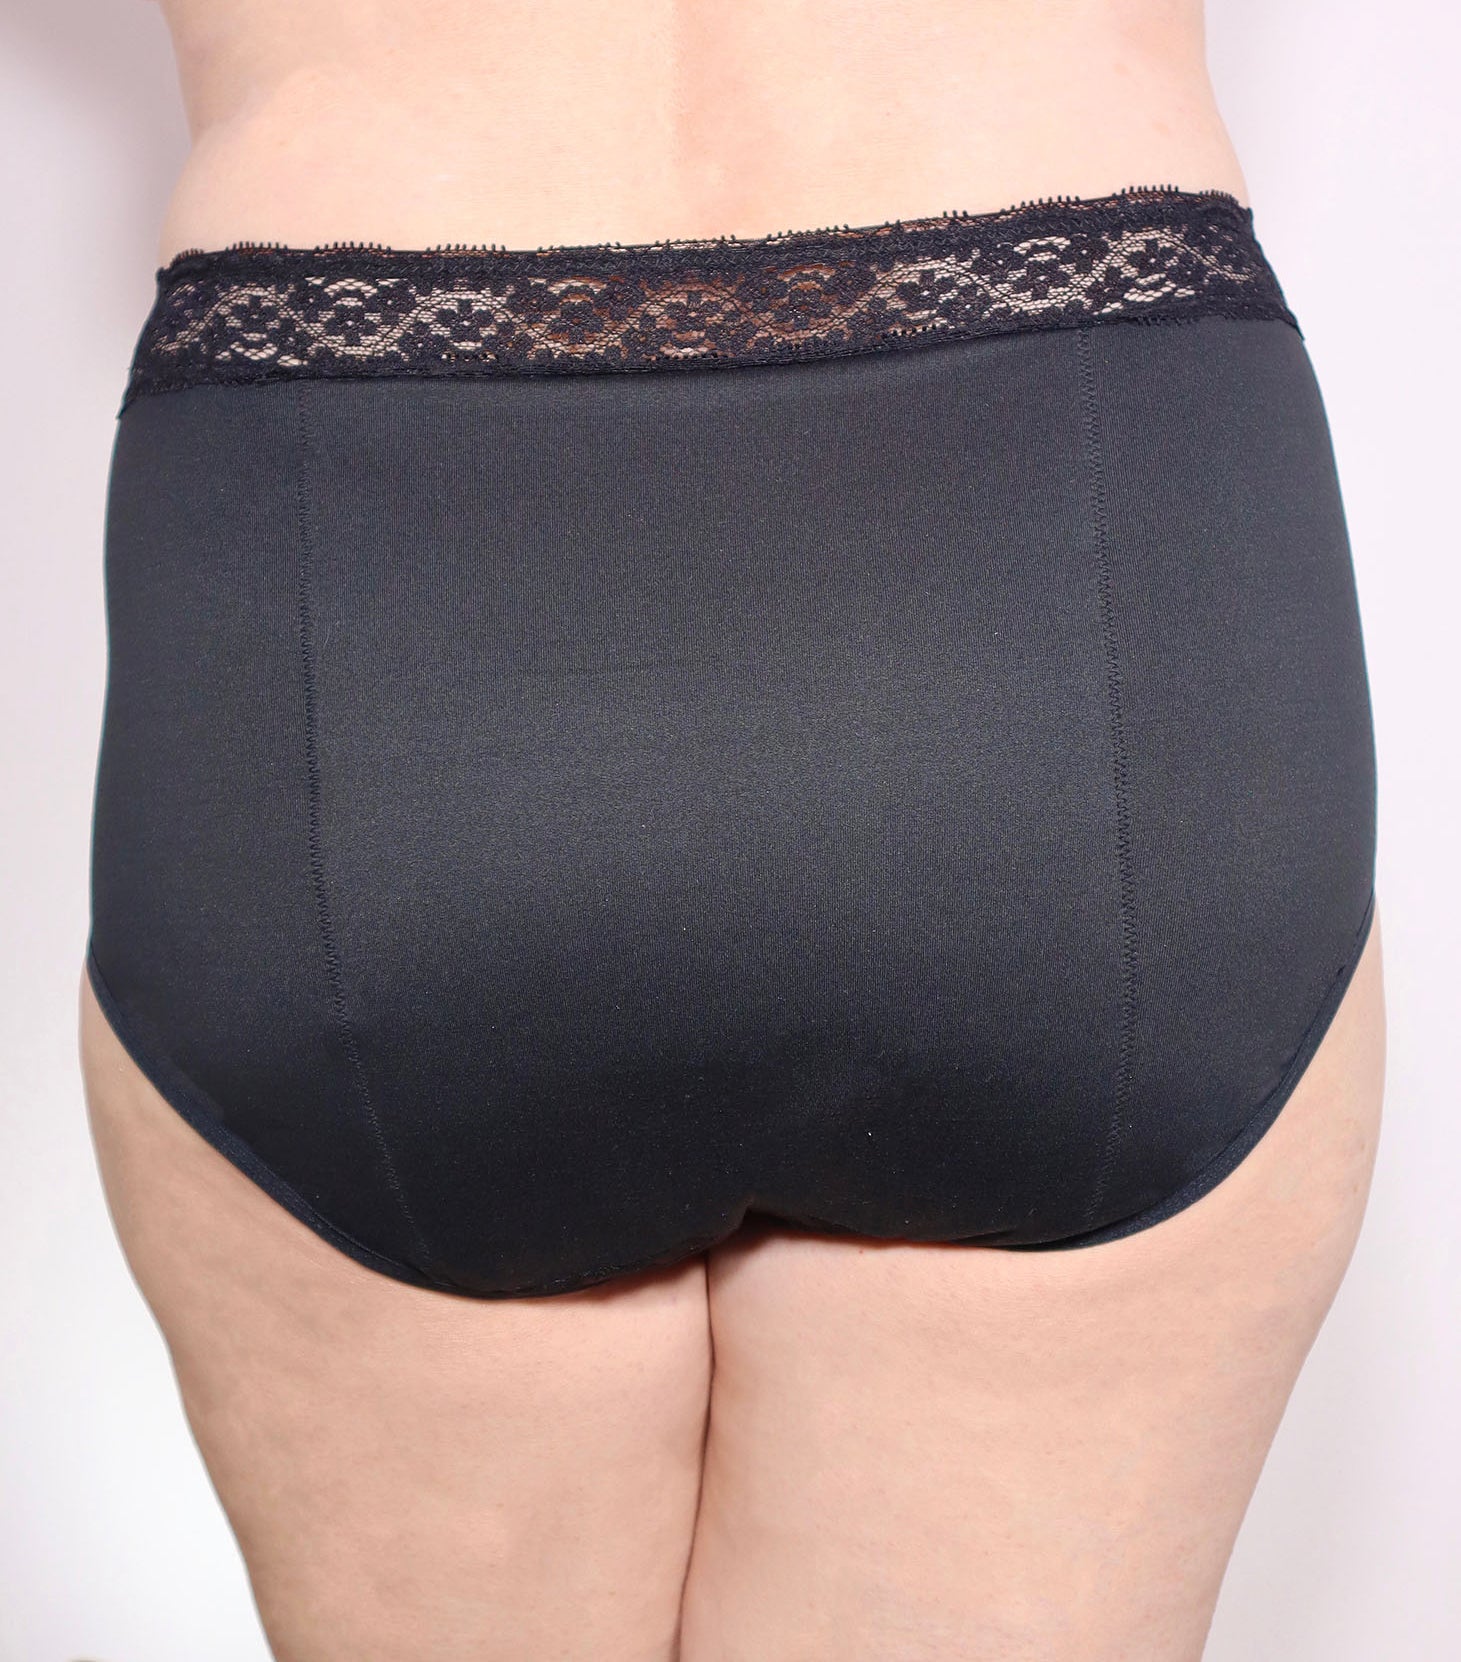 Maxi Panty Lace Brief - Black